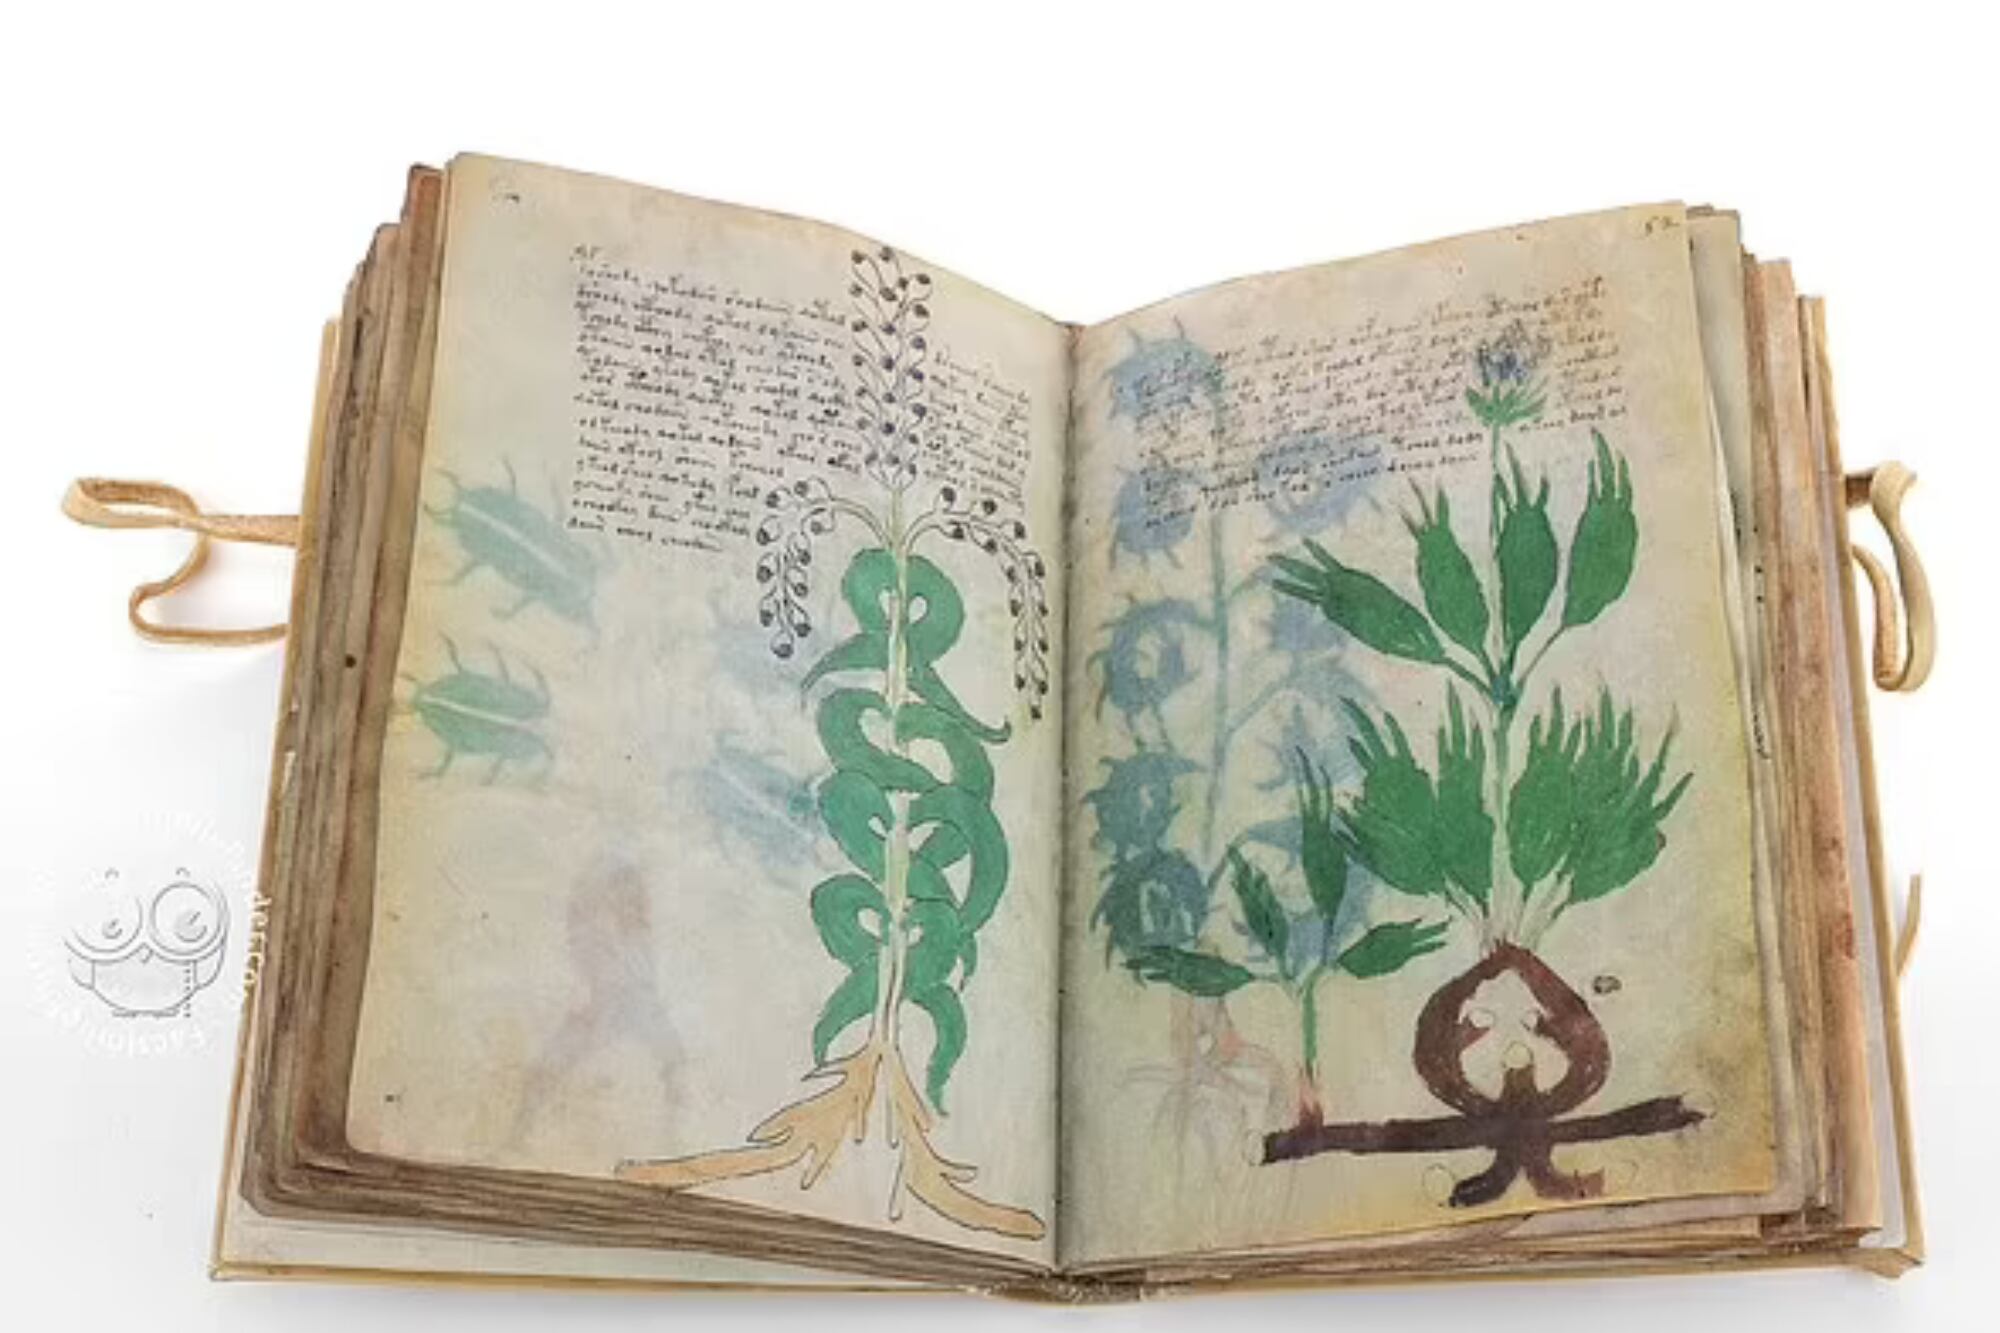 Descifraron qué dice un manuscrito de hace 600 años y su contenido resultó tener ilustraciones subidas de tono